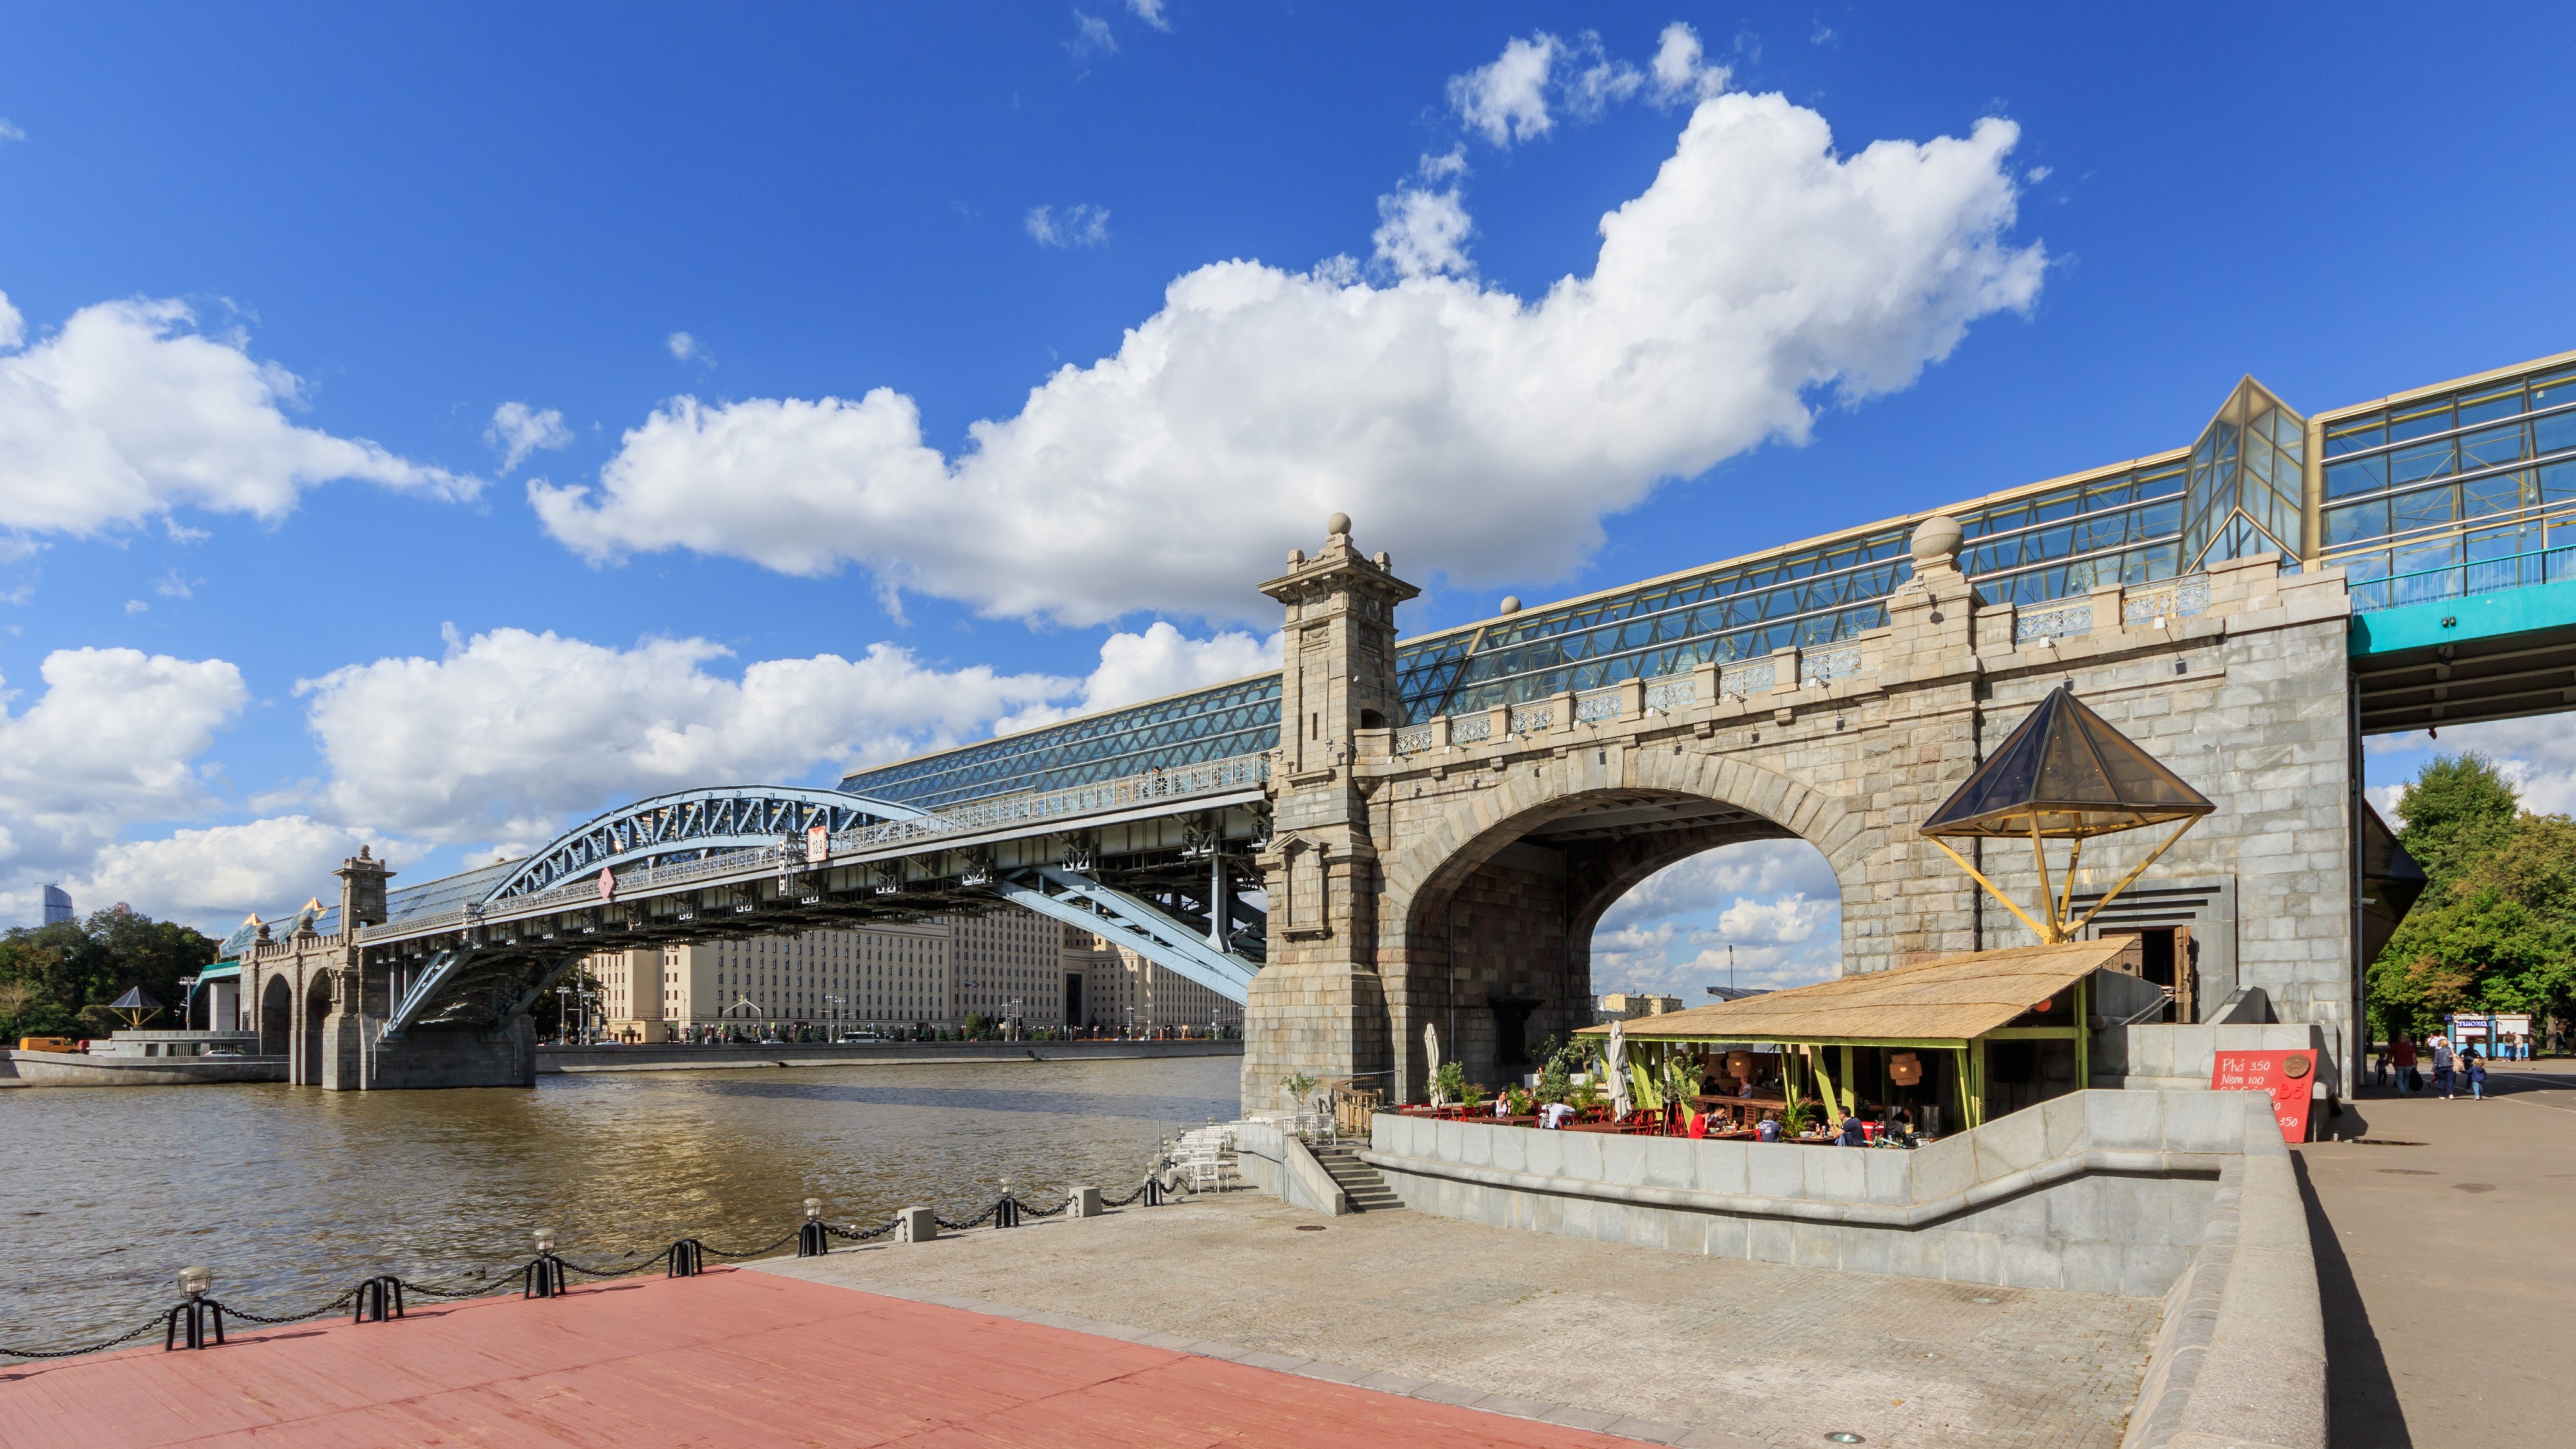 Moscow Gorky Park Pushkinsky Bridge 08-2016 img2